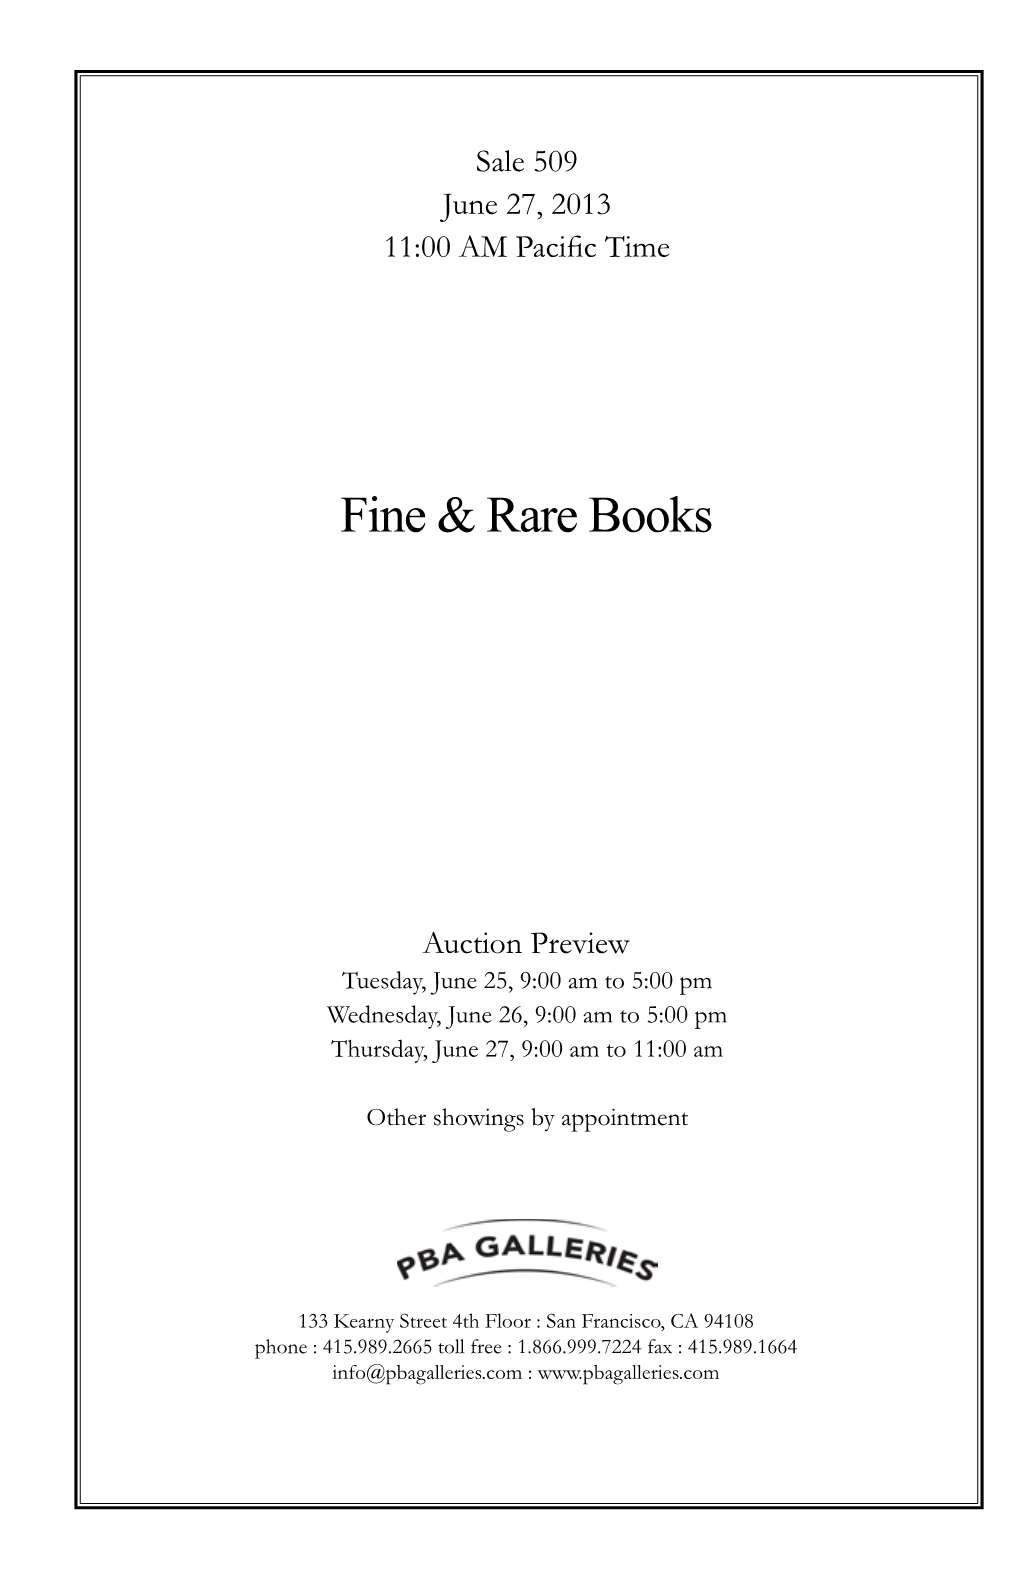 Fine & Rare Books